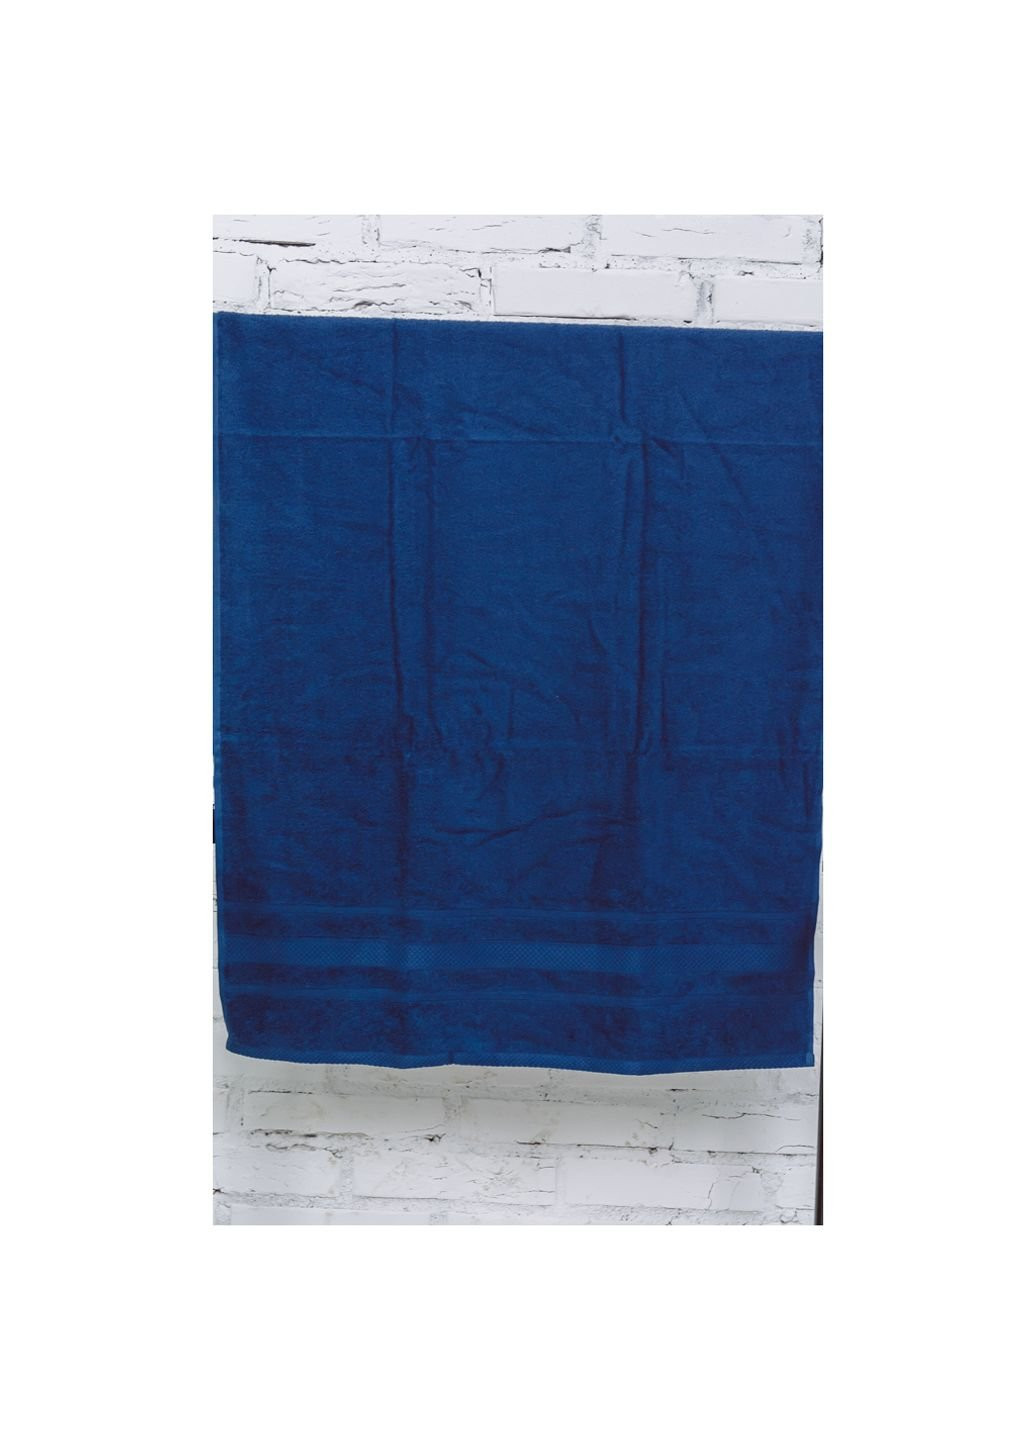 Mirson полотенце банное №5006 softness kingblue 100x150 см (2200003181241) синий производство - Украина